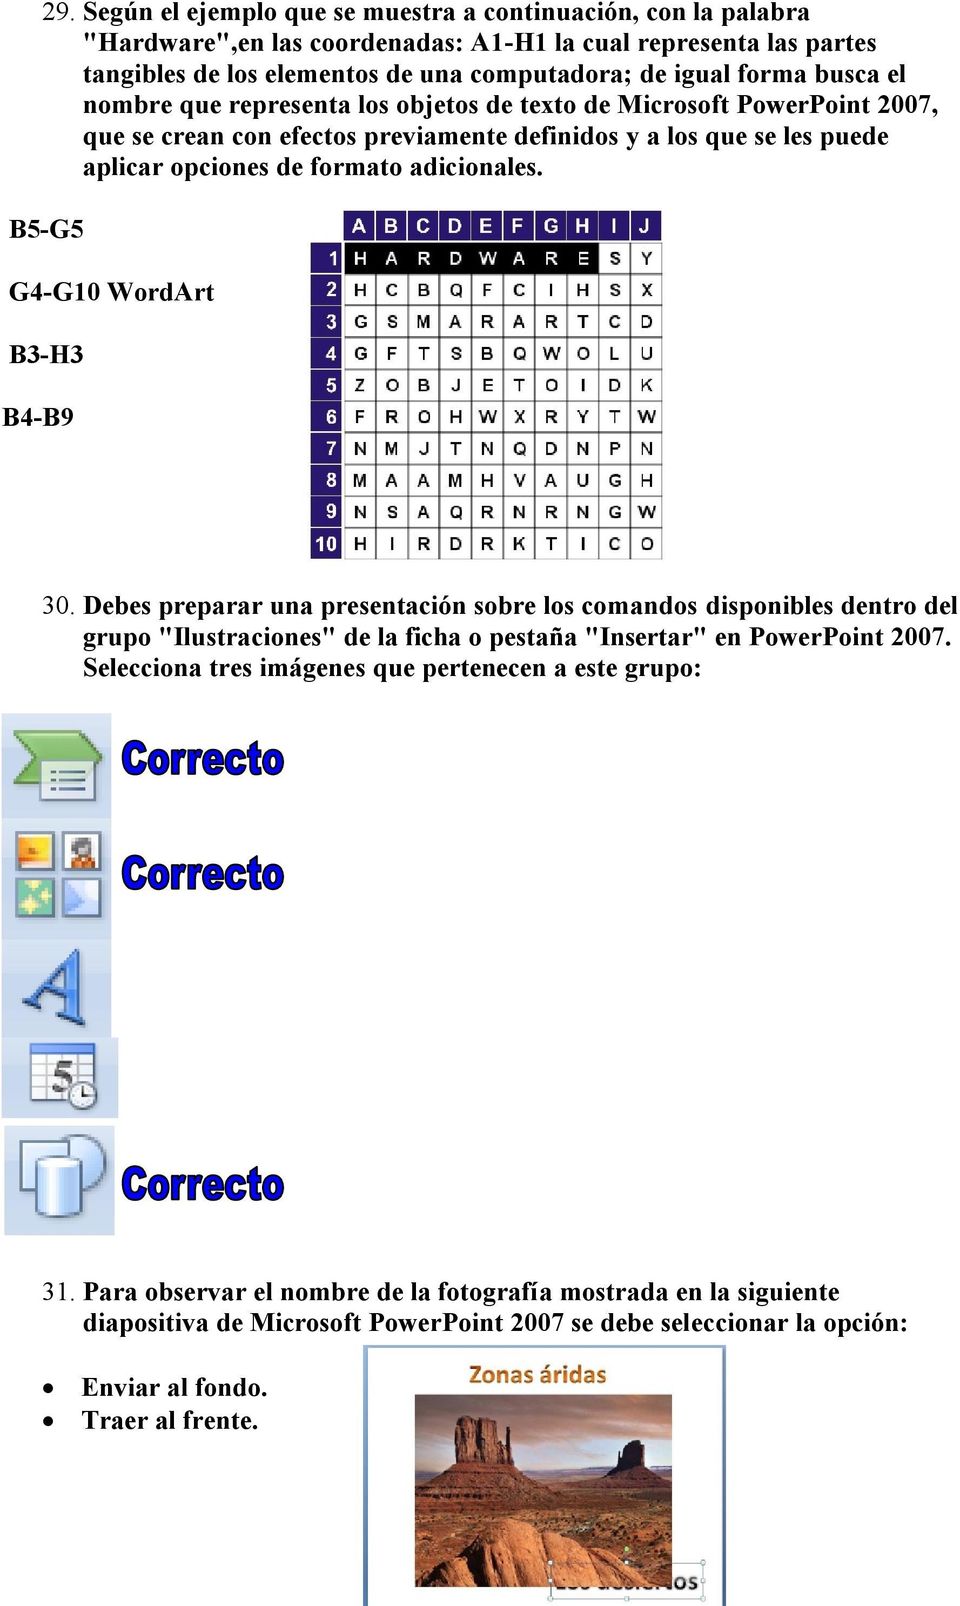 B5-G5 G4-G10 WordArt B3-H3 B4-B9 30. Debes preparar una presentación sobre los comandos disponibles dentro del grupo "Ilustraciones" de la ficha o pestaña "Insertar" en PowerPoint 2007.